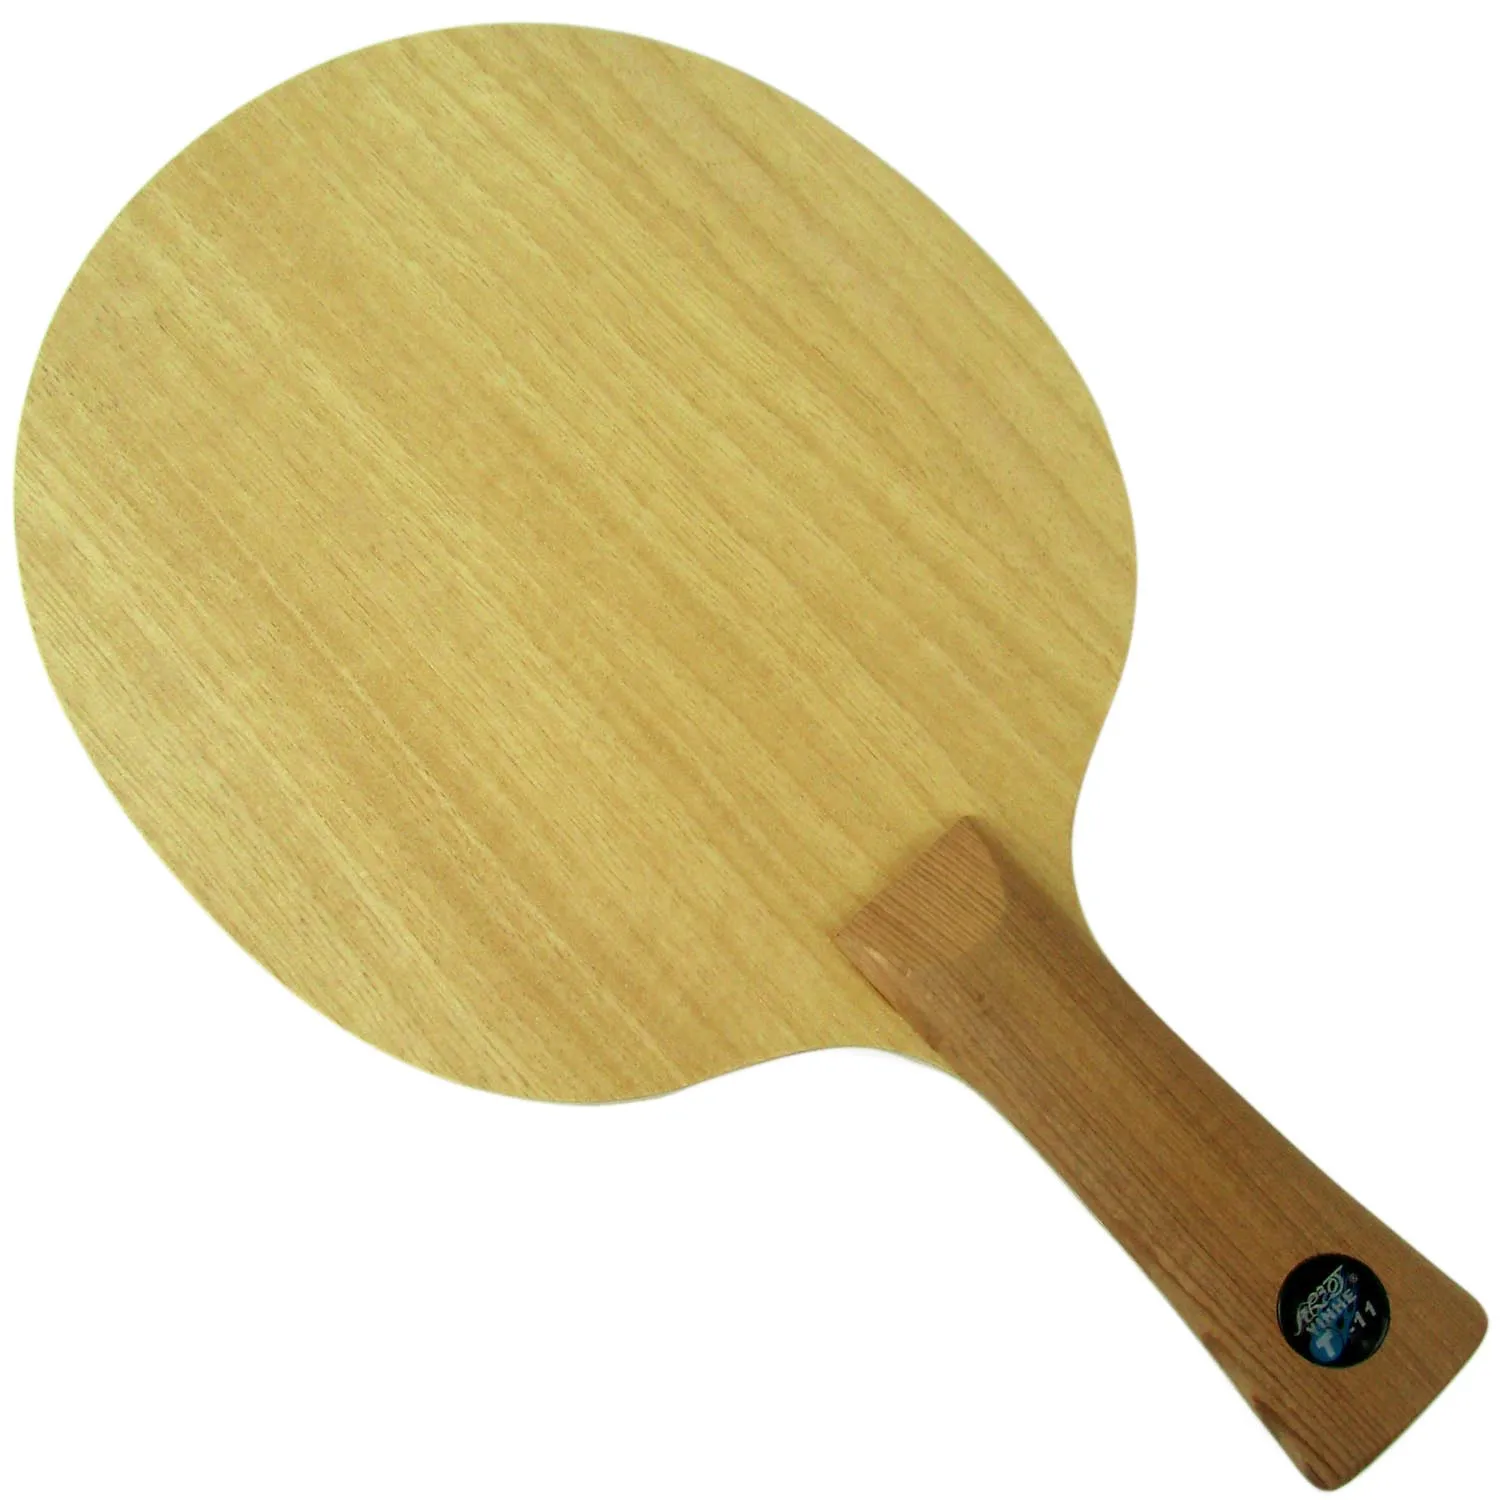 Pro Настольный теннис (пинг понг) Combo ракетки: Galaxy YINHE T-11 + с 2 шт. Mercury II длинные для европейской хватки fl